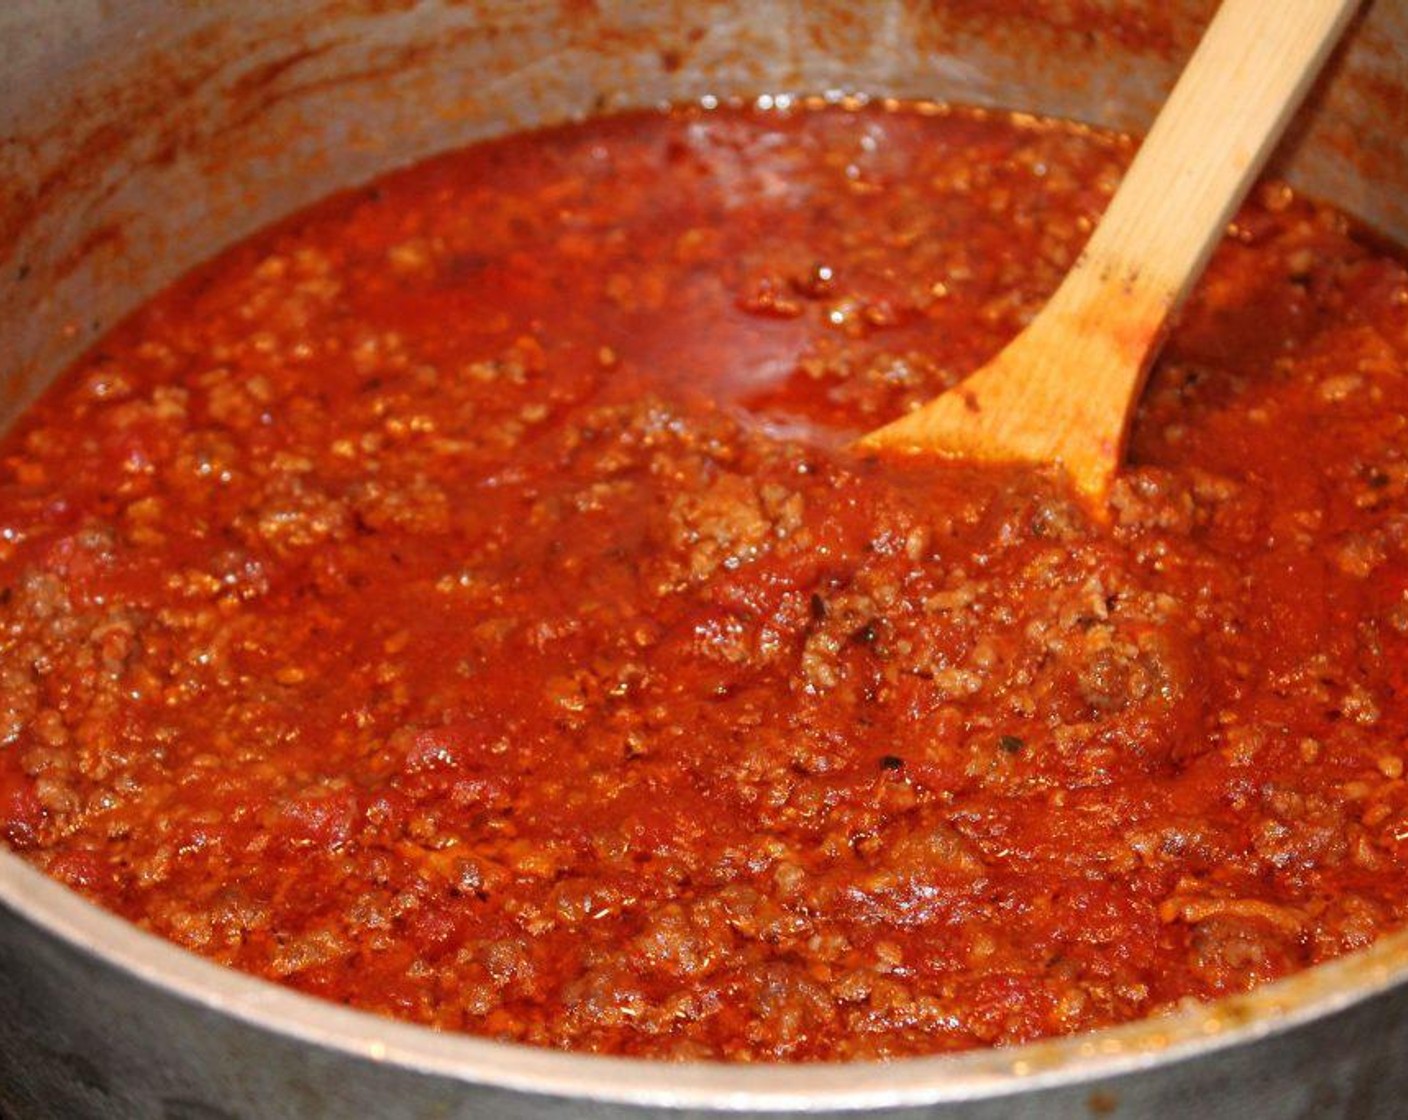 Schritt 5 Tomatenmark (3 Esslöffel) unterrühren, mit Salz (wenig) und Pfeffer (wenig) würzen. Langsam zum Kochen bringen, dann die Hitze auf die niedrigste Stufe reduzieren und ca. 45 Minuten unter gelegentlichem Rühren köcheln lassen.